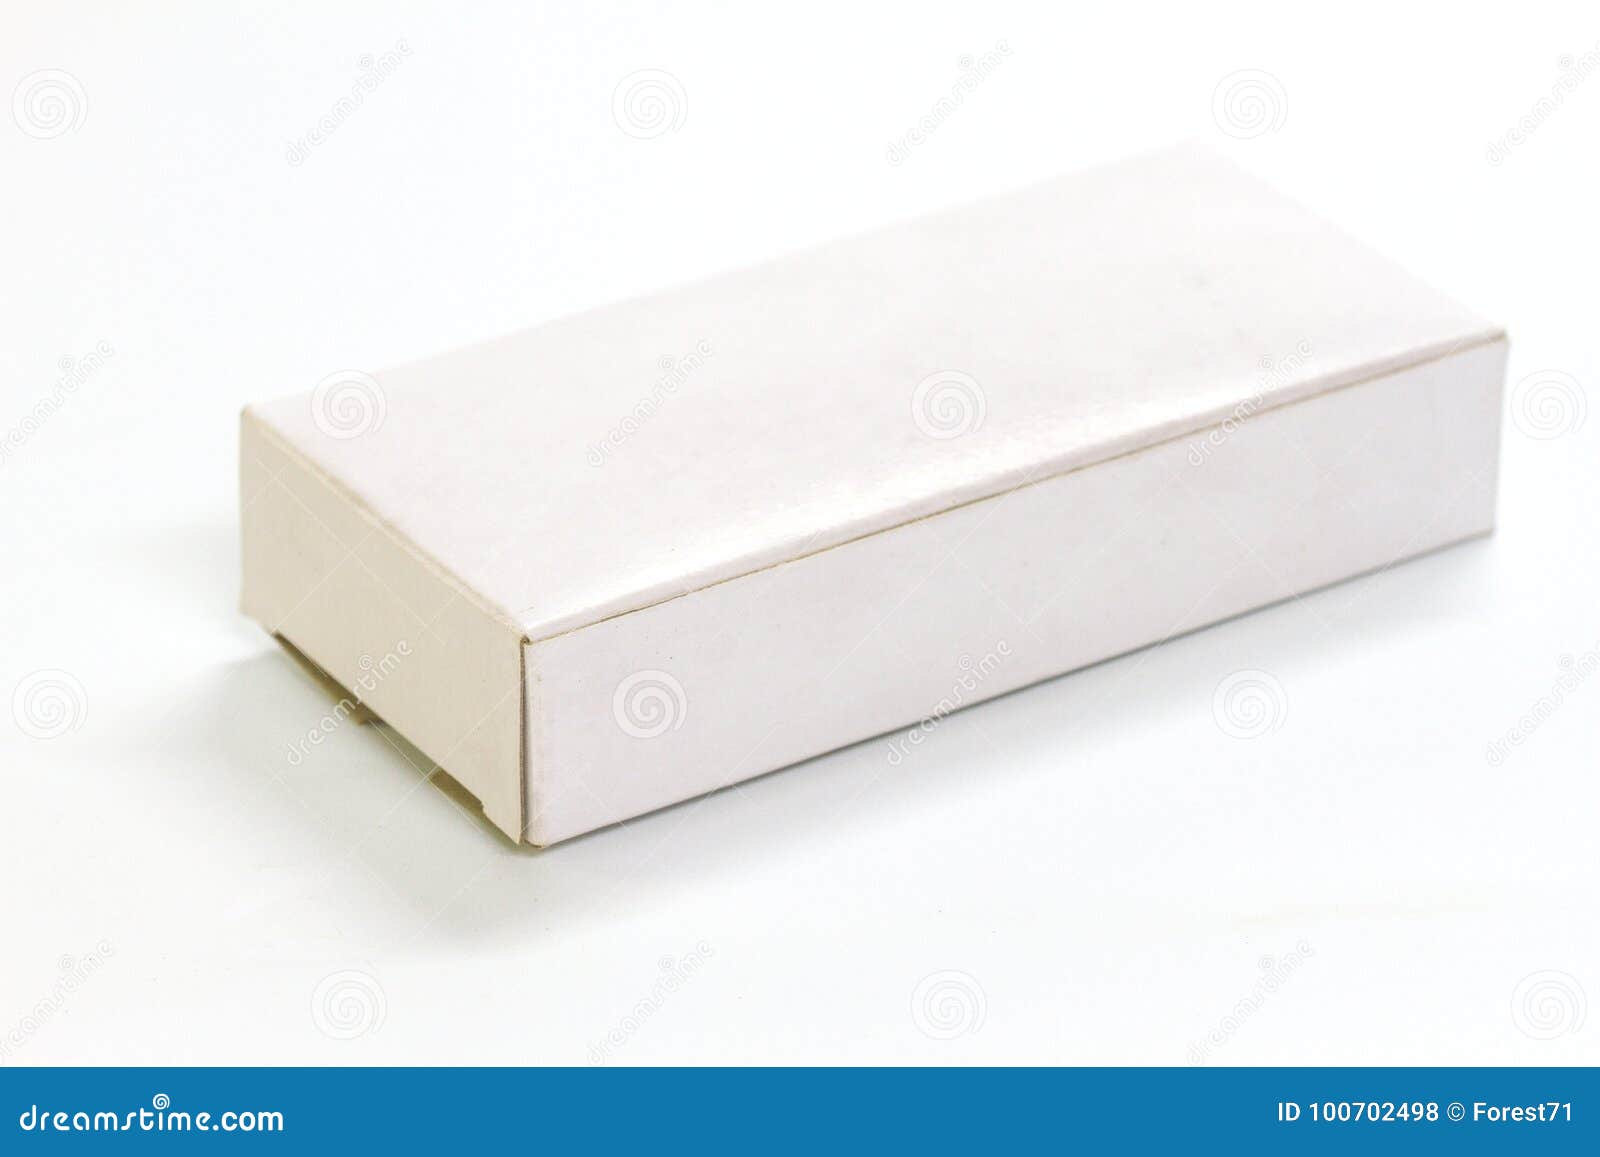 Download imagens de stock Molde Da Caixa Do Livro Branco - Baixe ...